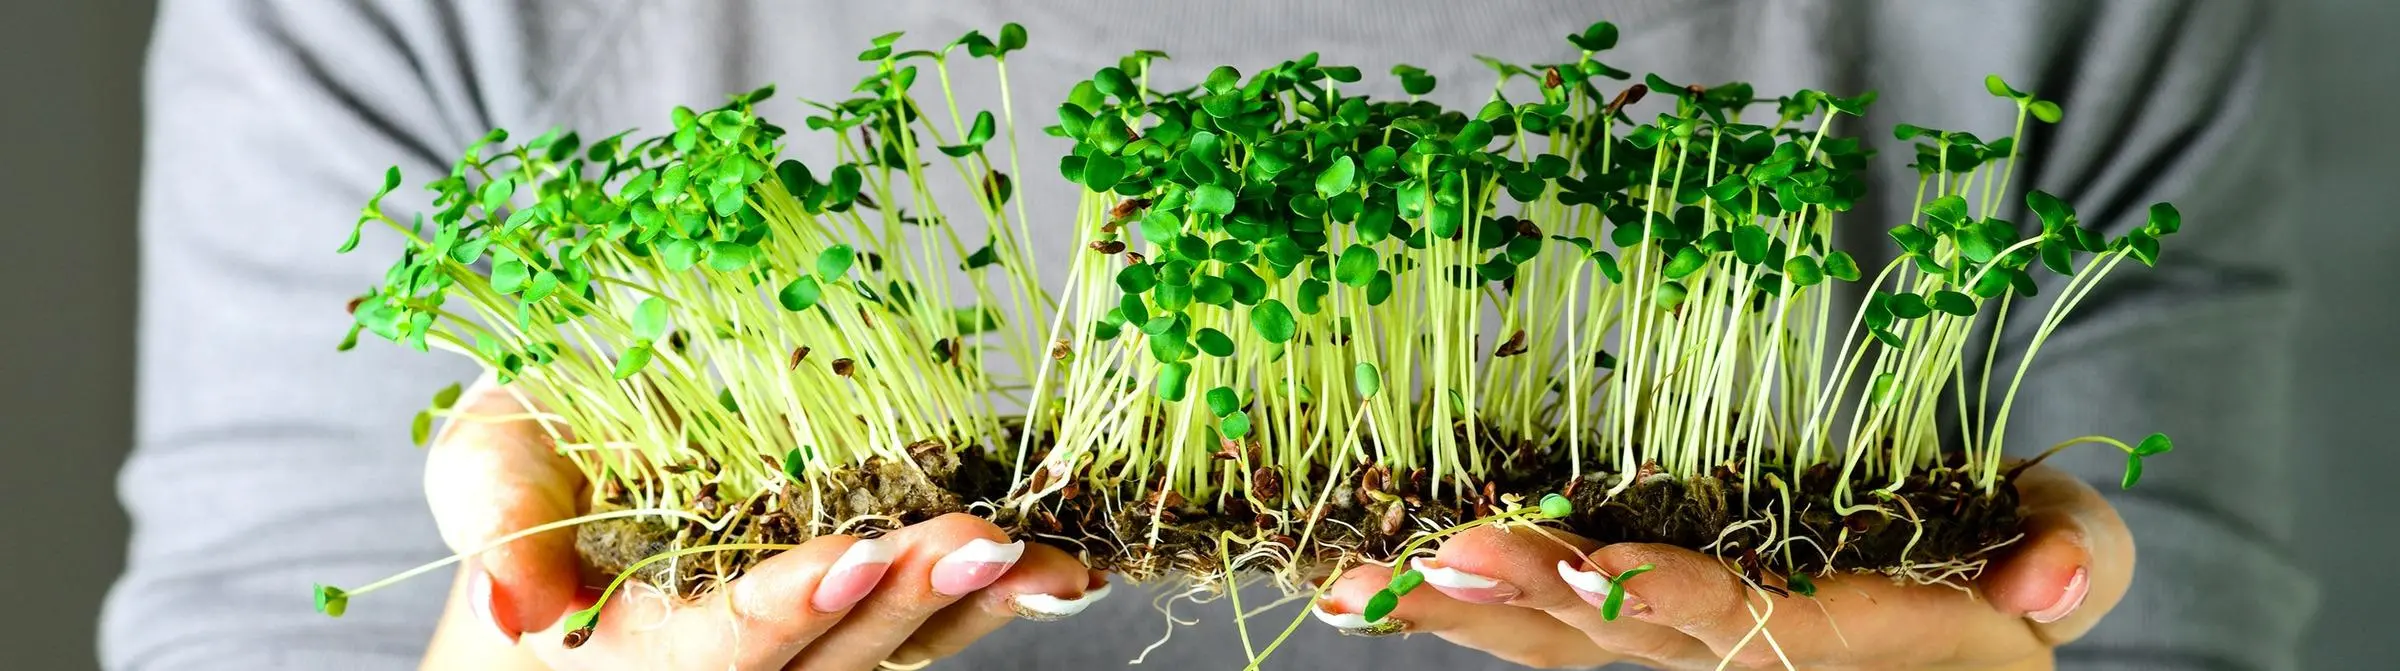 Микрозелень в рационе питания: польза для здоровья, физических кондиций и личностной продуктивности